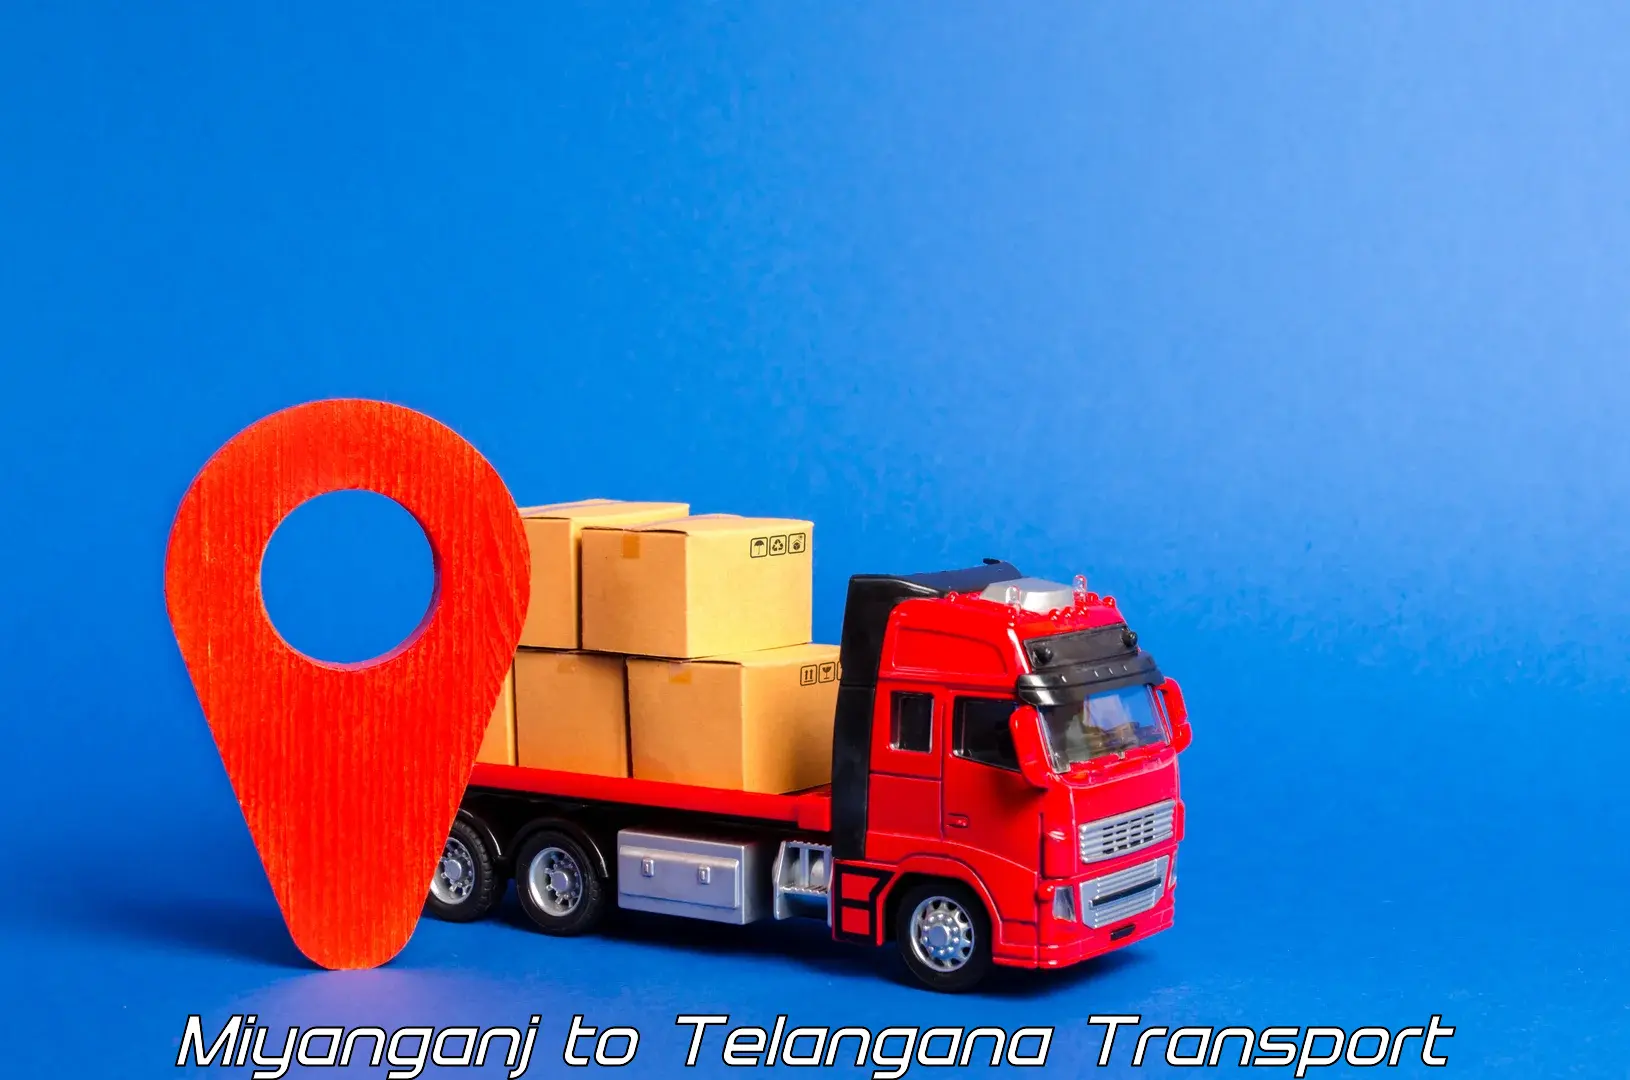 Daily parcel service transport Miyanganj to Ibrahimpatnam